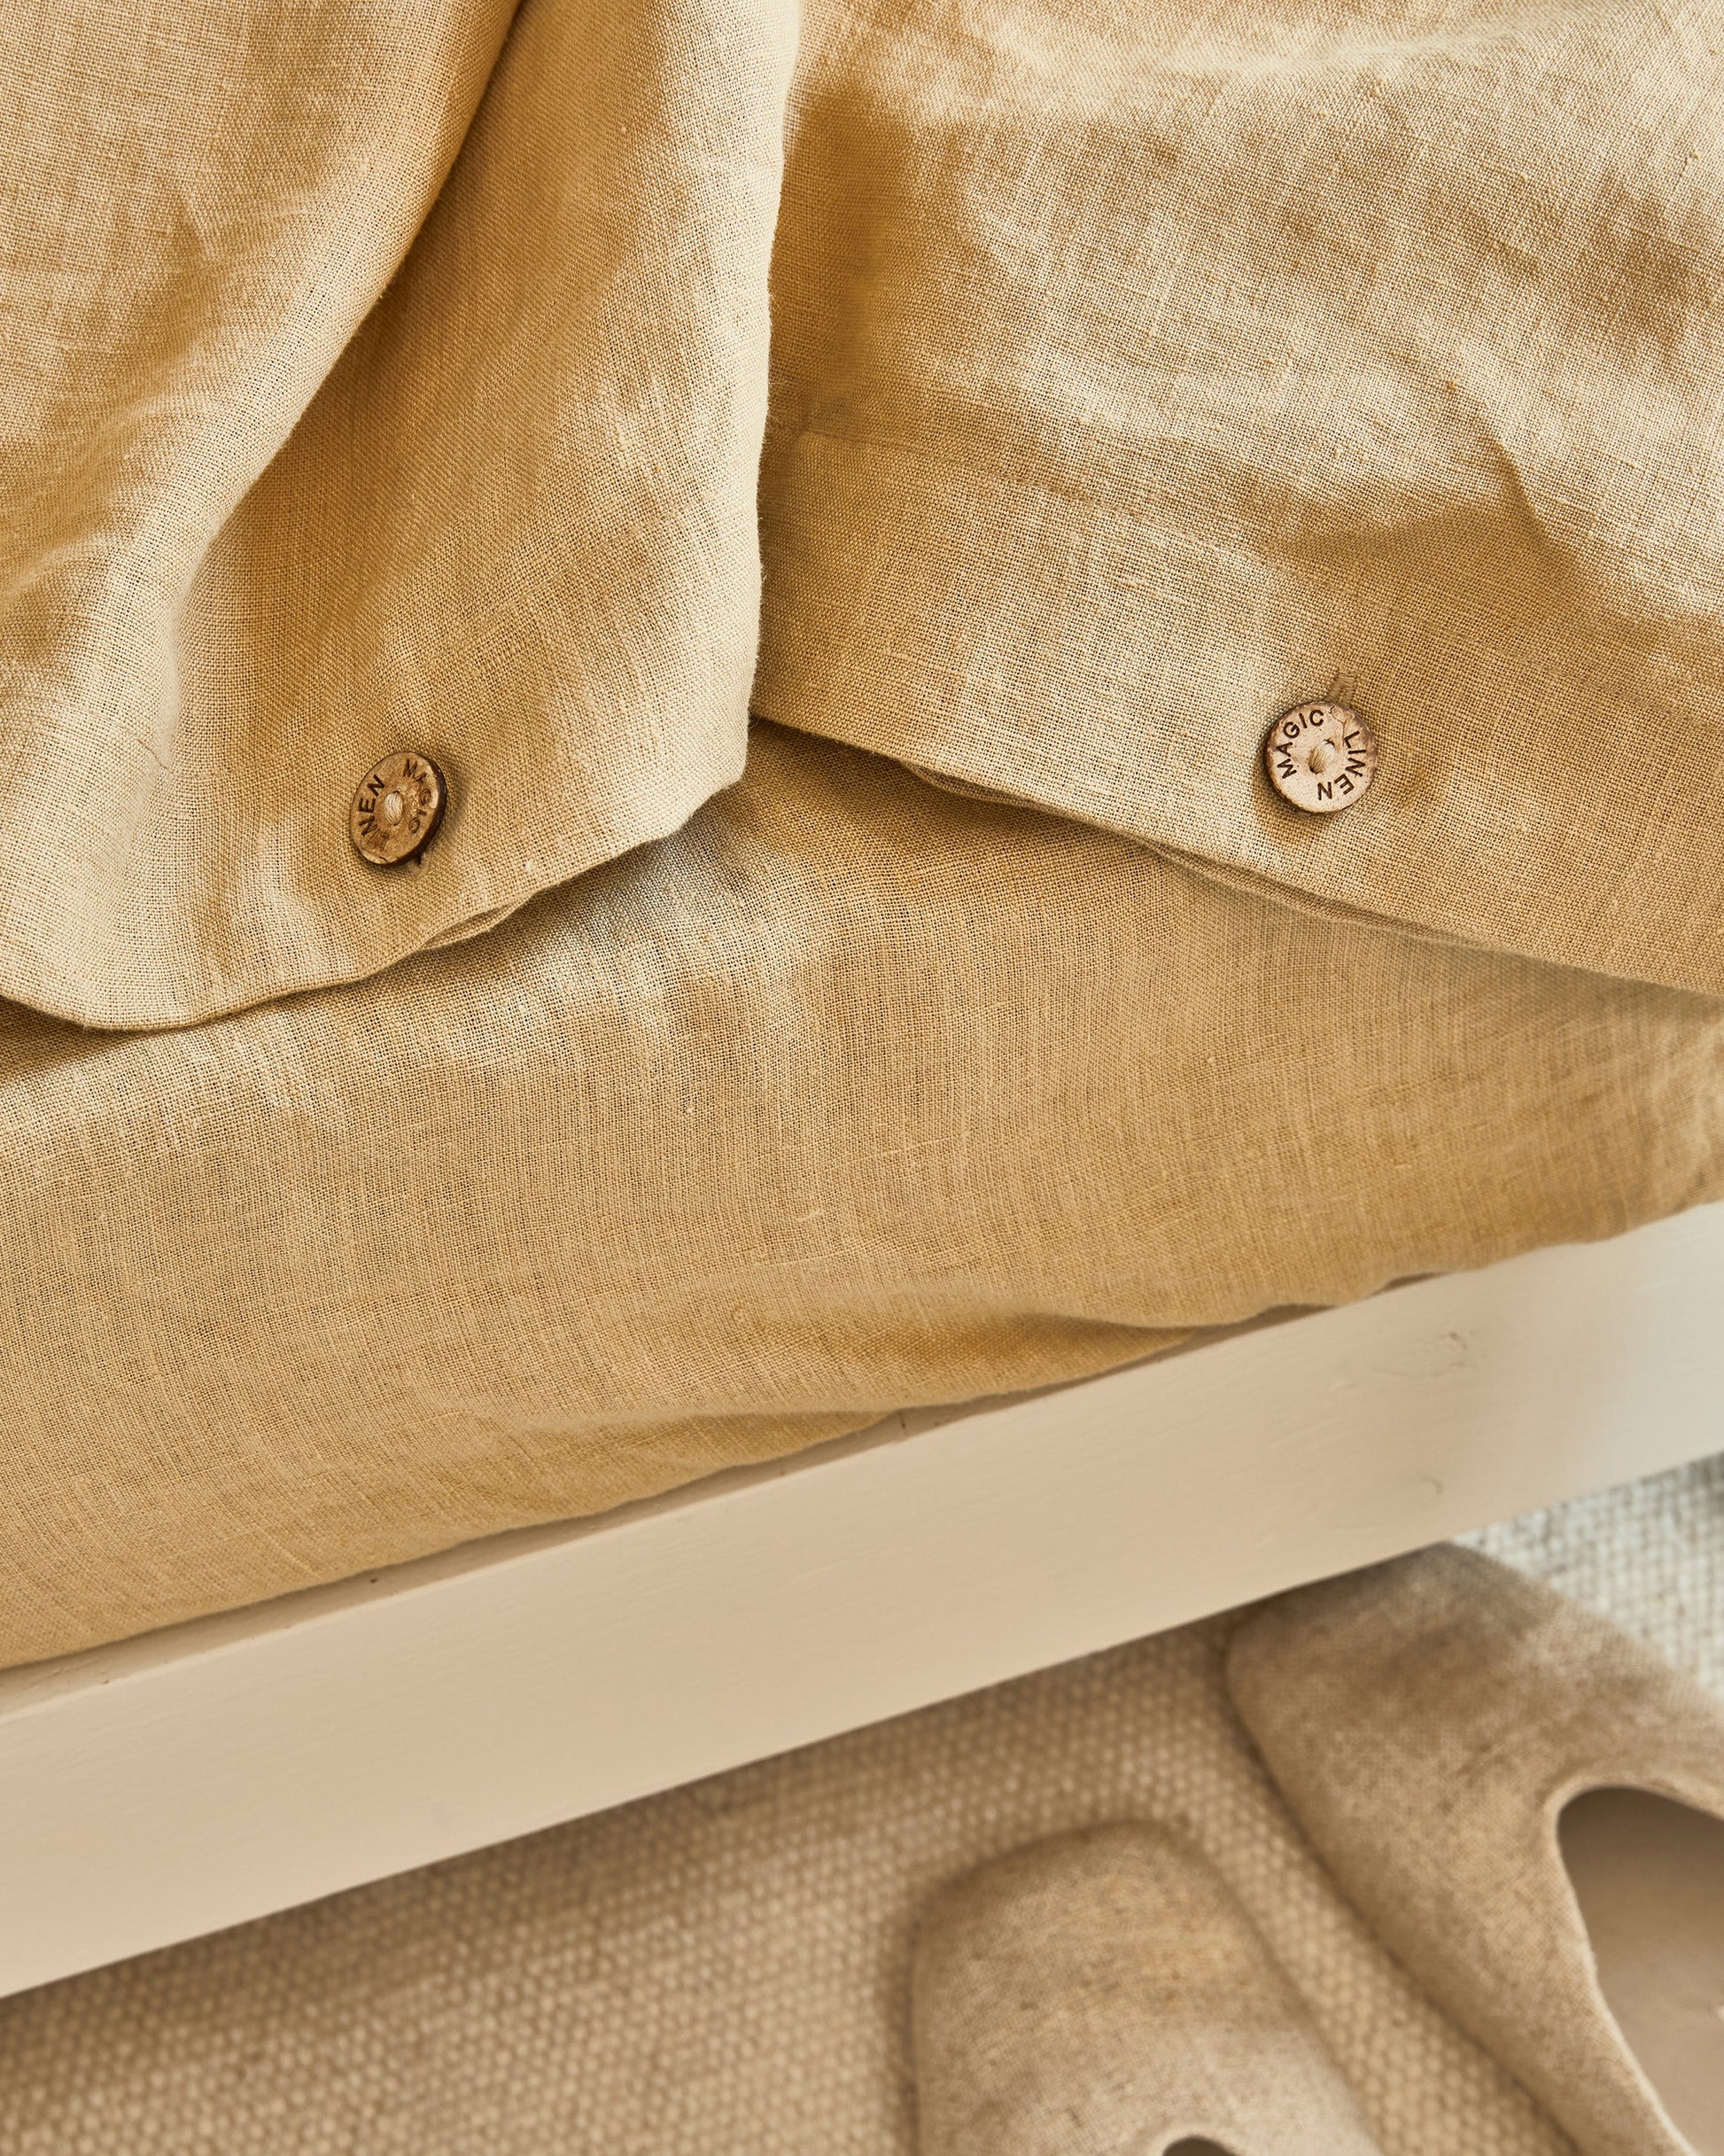 Sandy beige linen fitted sheet - MagicLinen